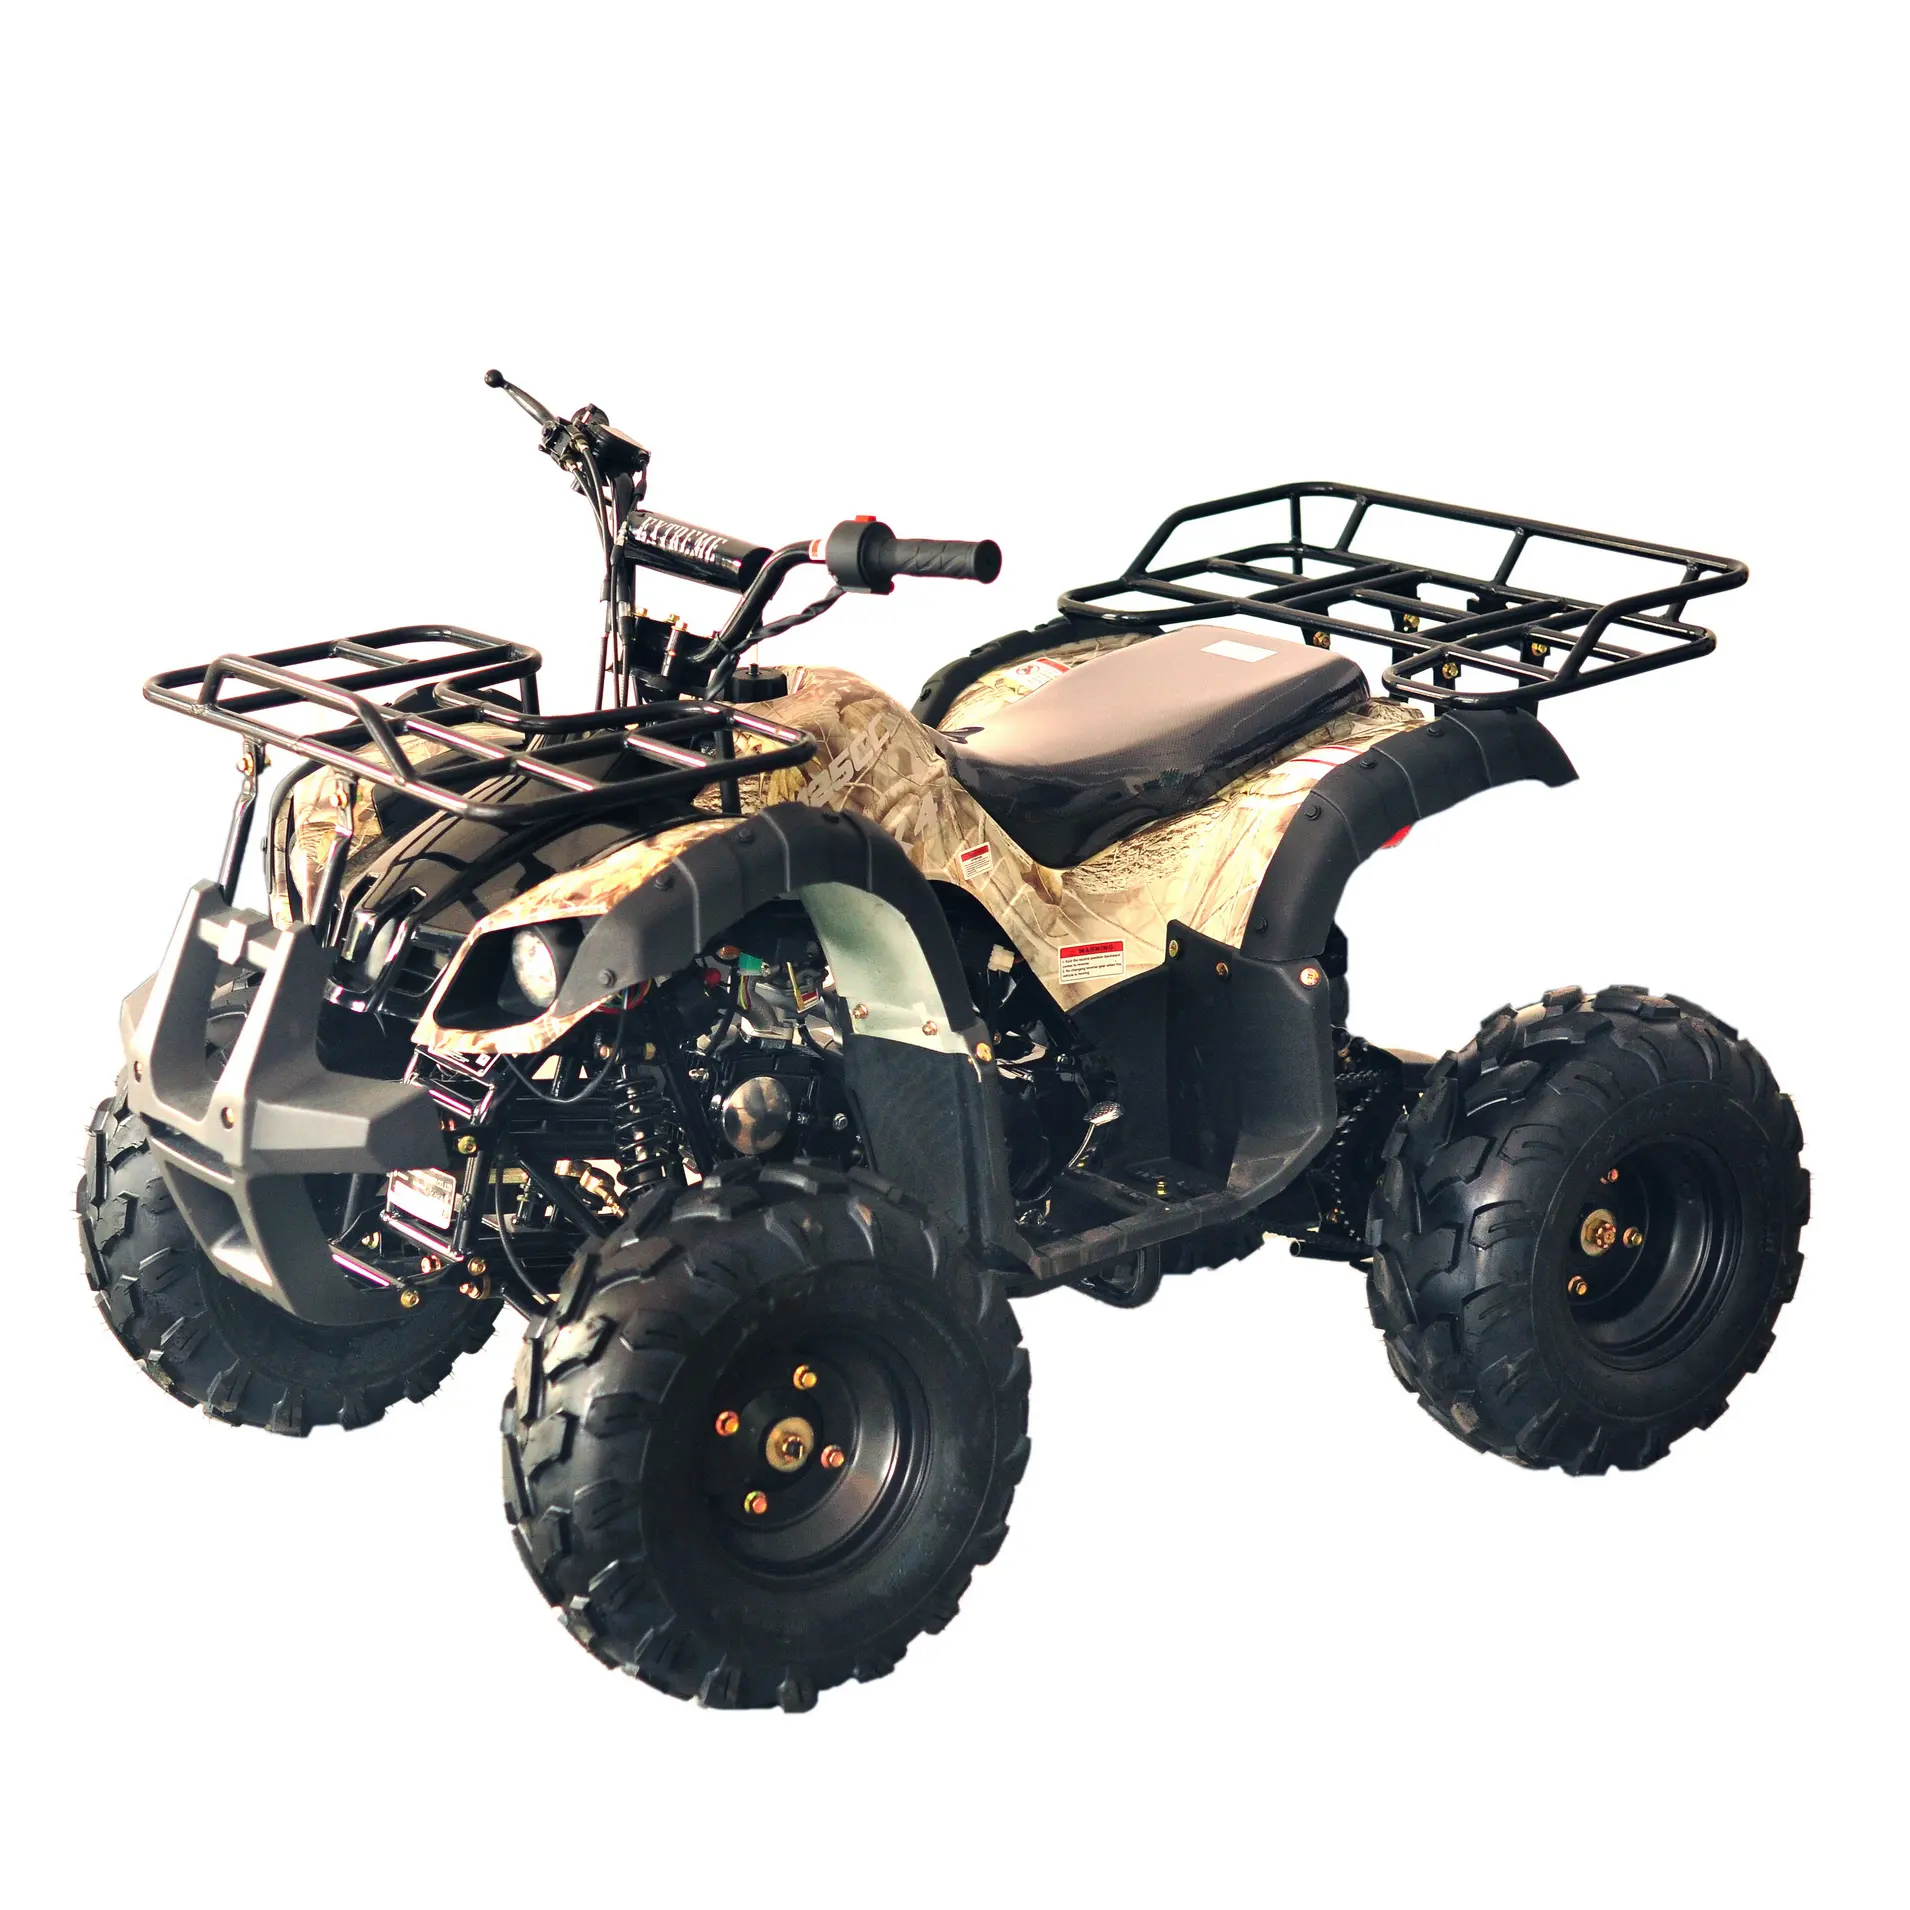 Chain Drive Transmission System billig 125cc Displacement ATV zu verkaufen